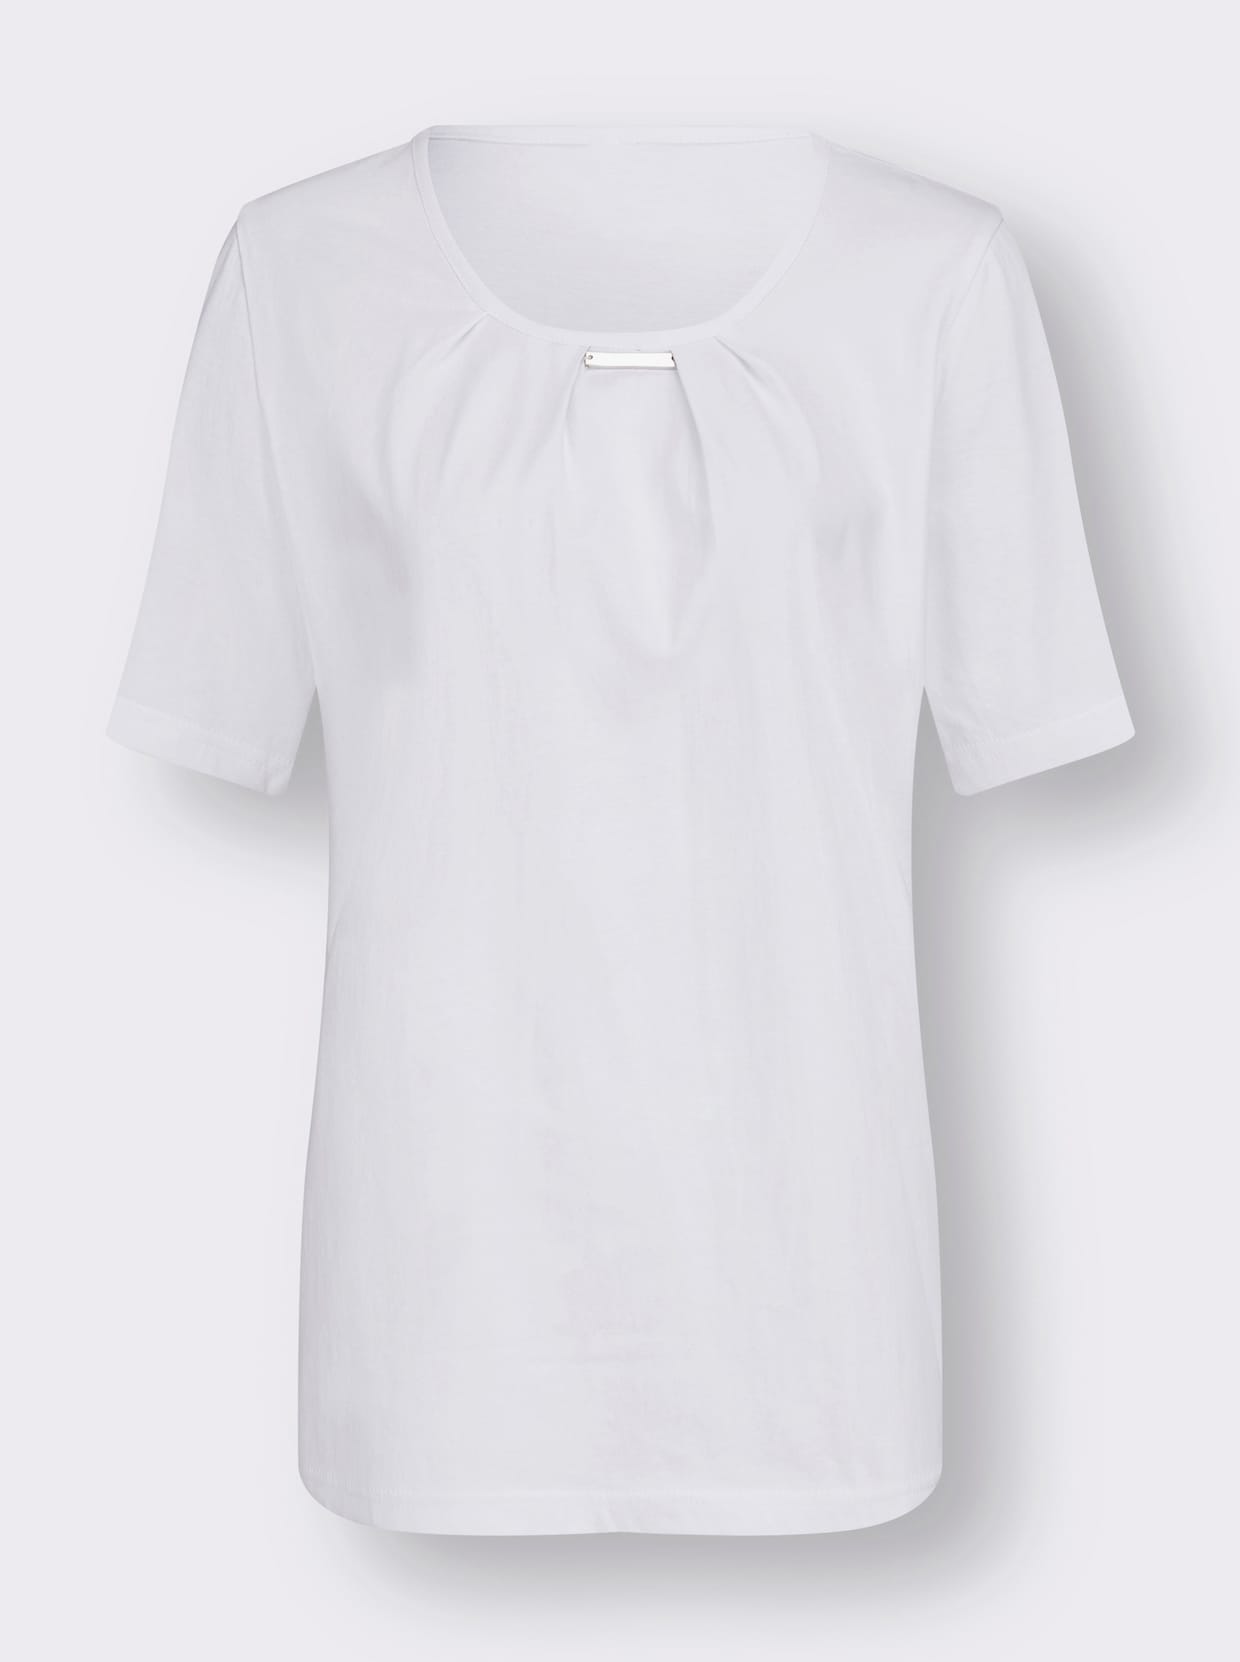 Kurzarm-Shirt - weiß